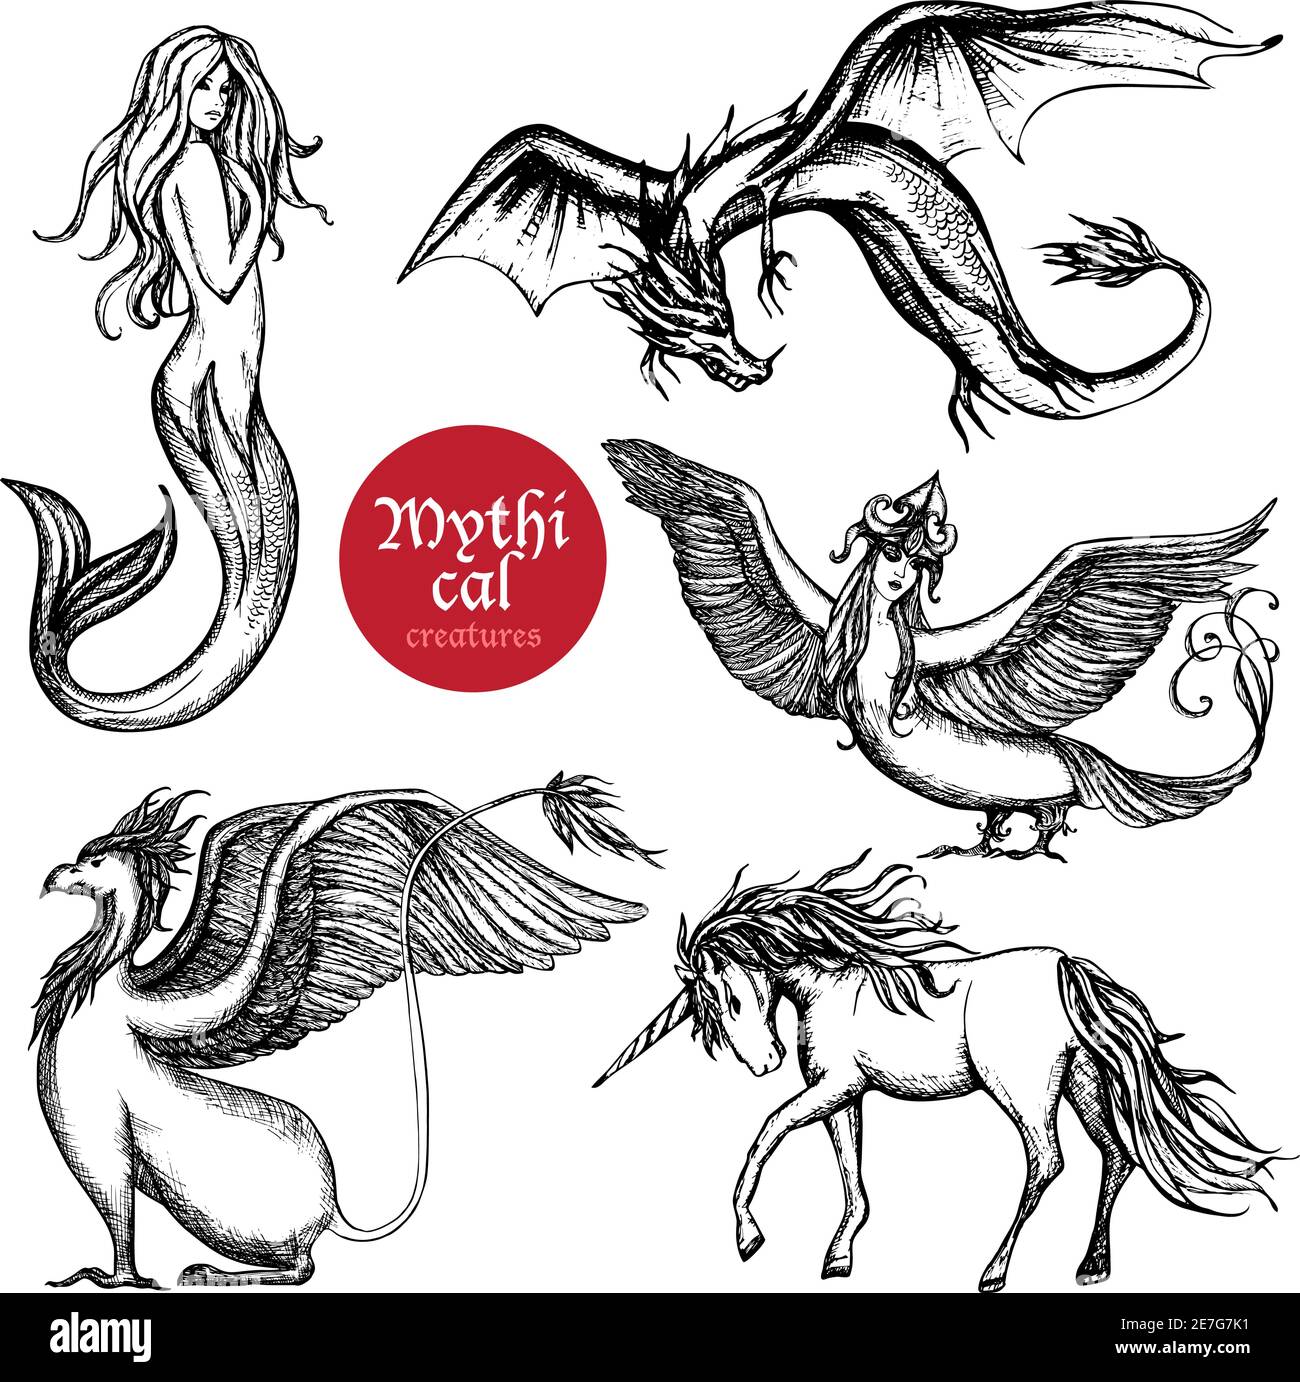 Créatures mythiques dessin à la main ensemble d'illustrations vectorielles isolées Illustration de Vecteur